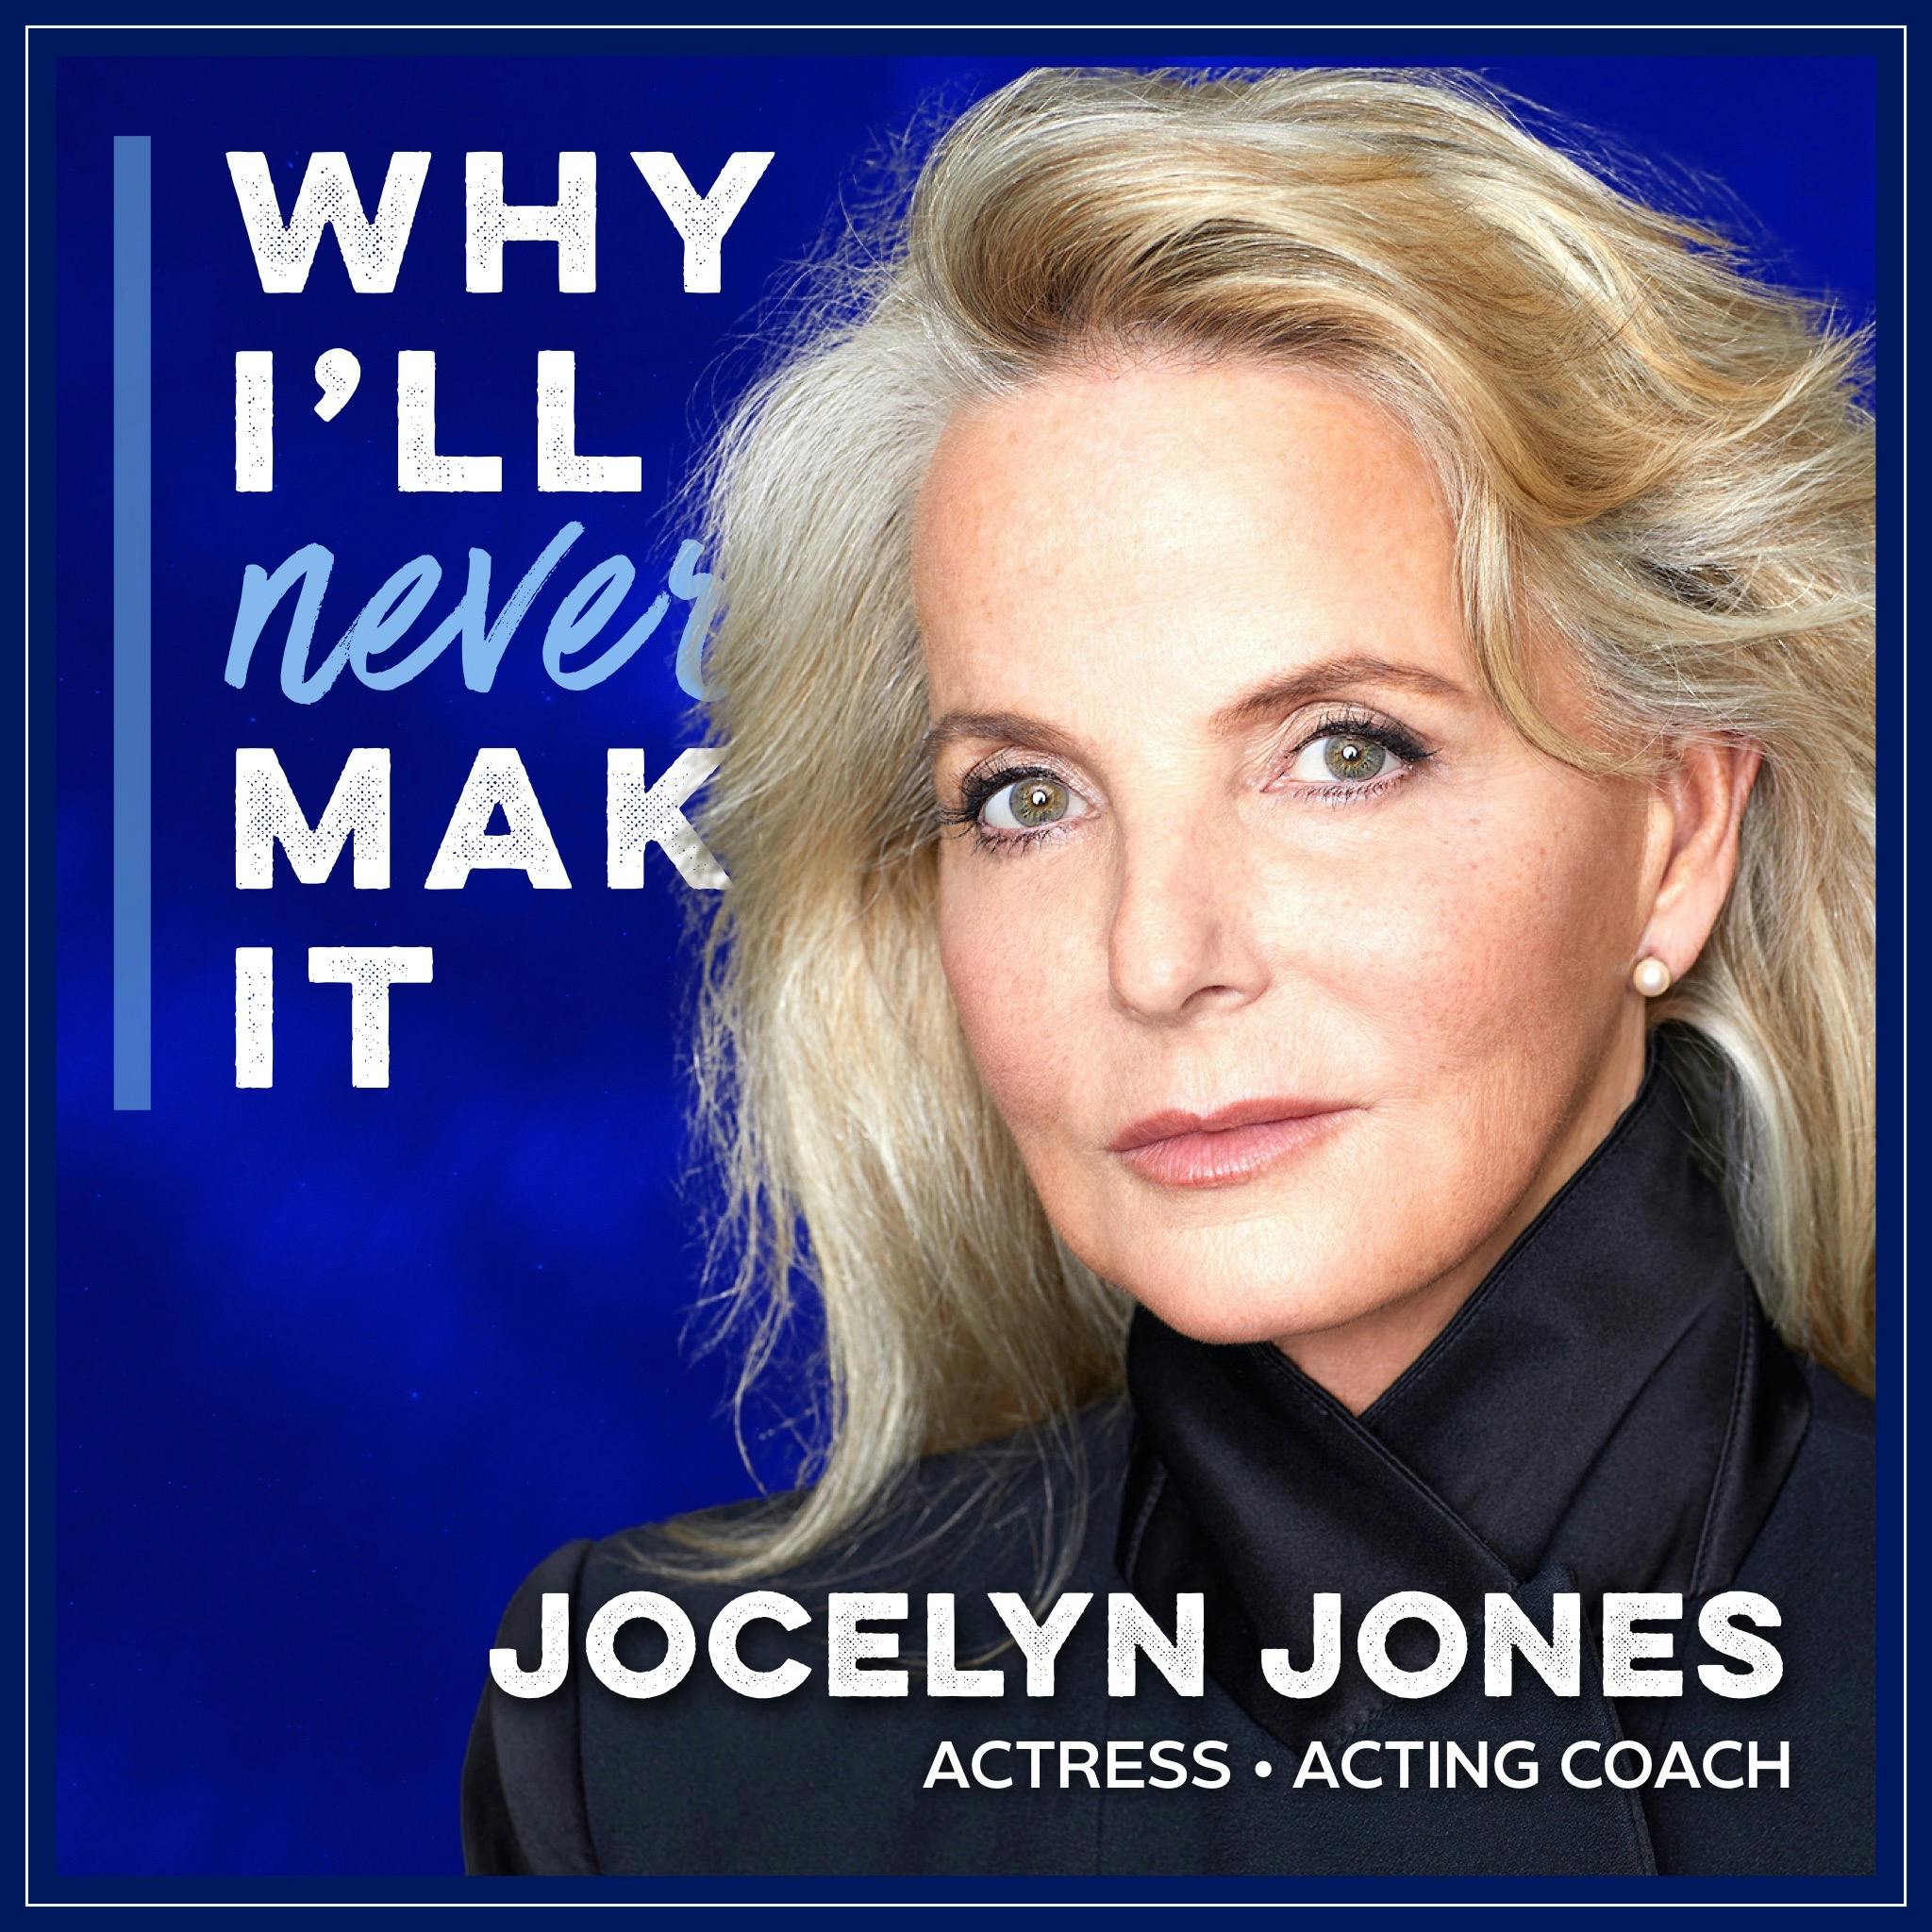 Jocelyn Jones Helps Actors and Individuals Awaken Their Artistry and Creativity